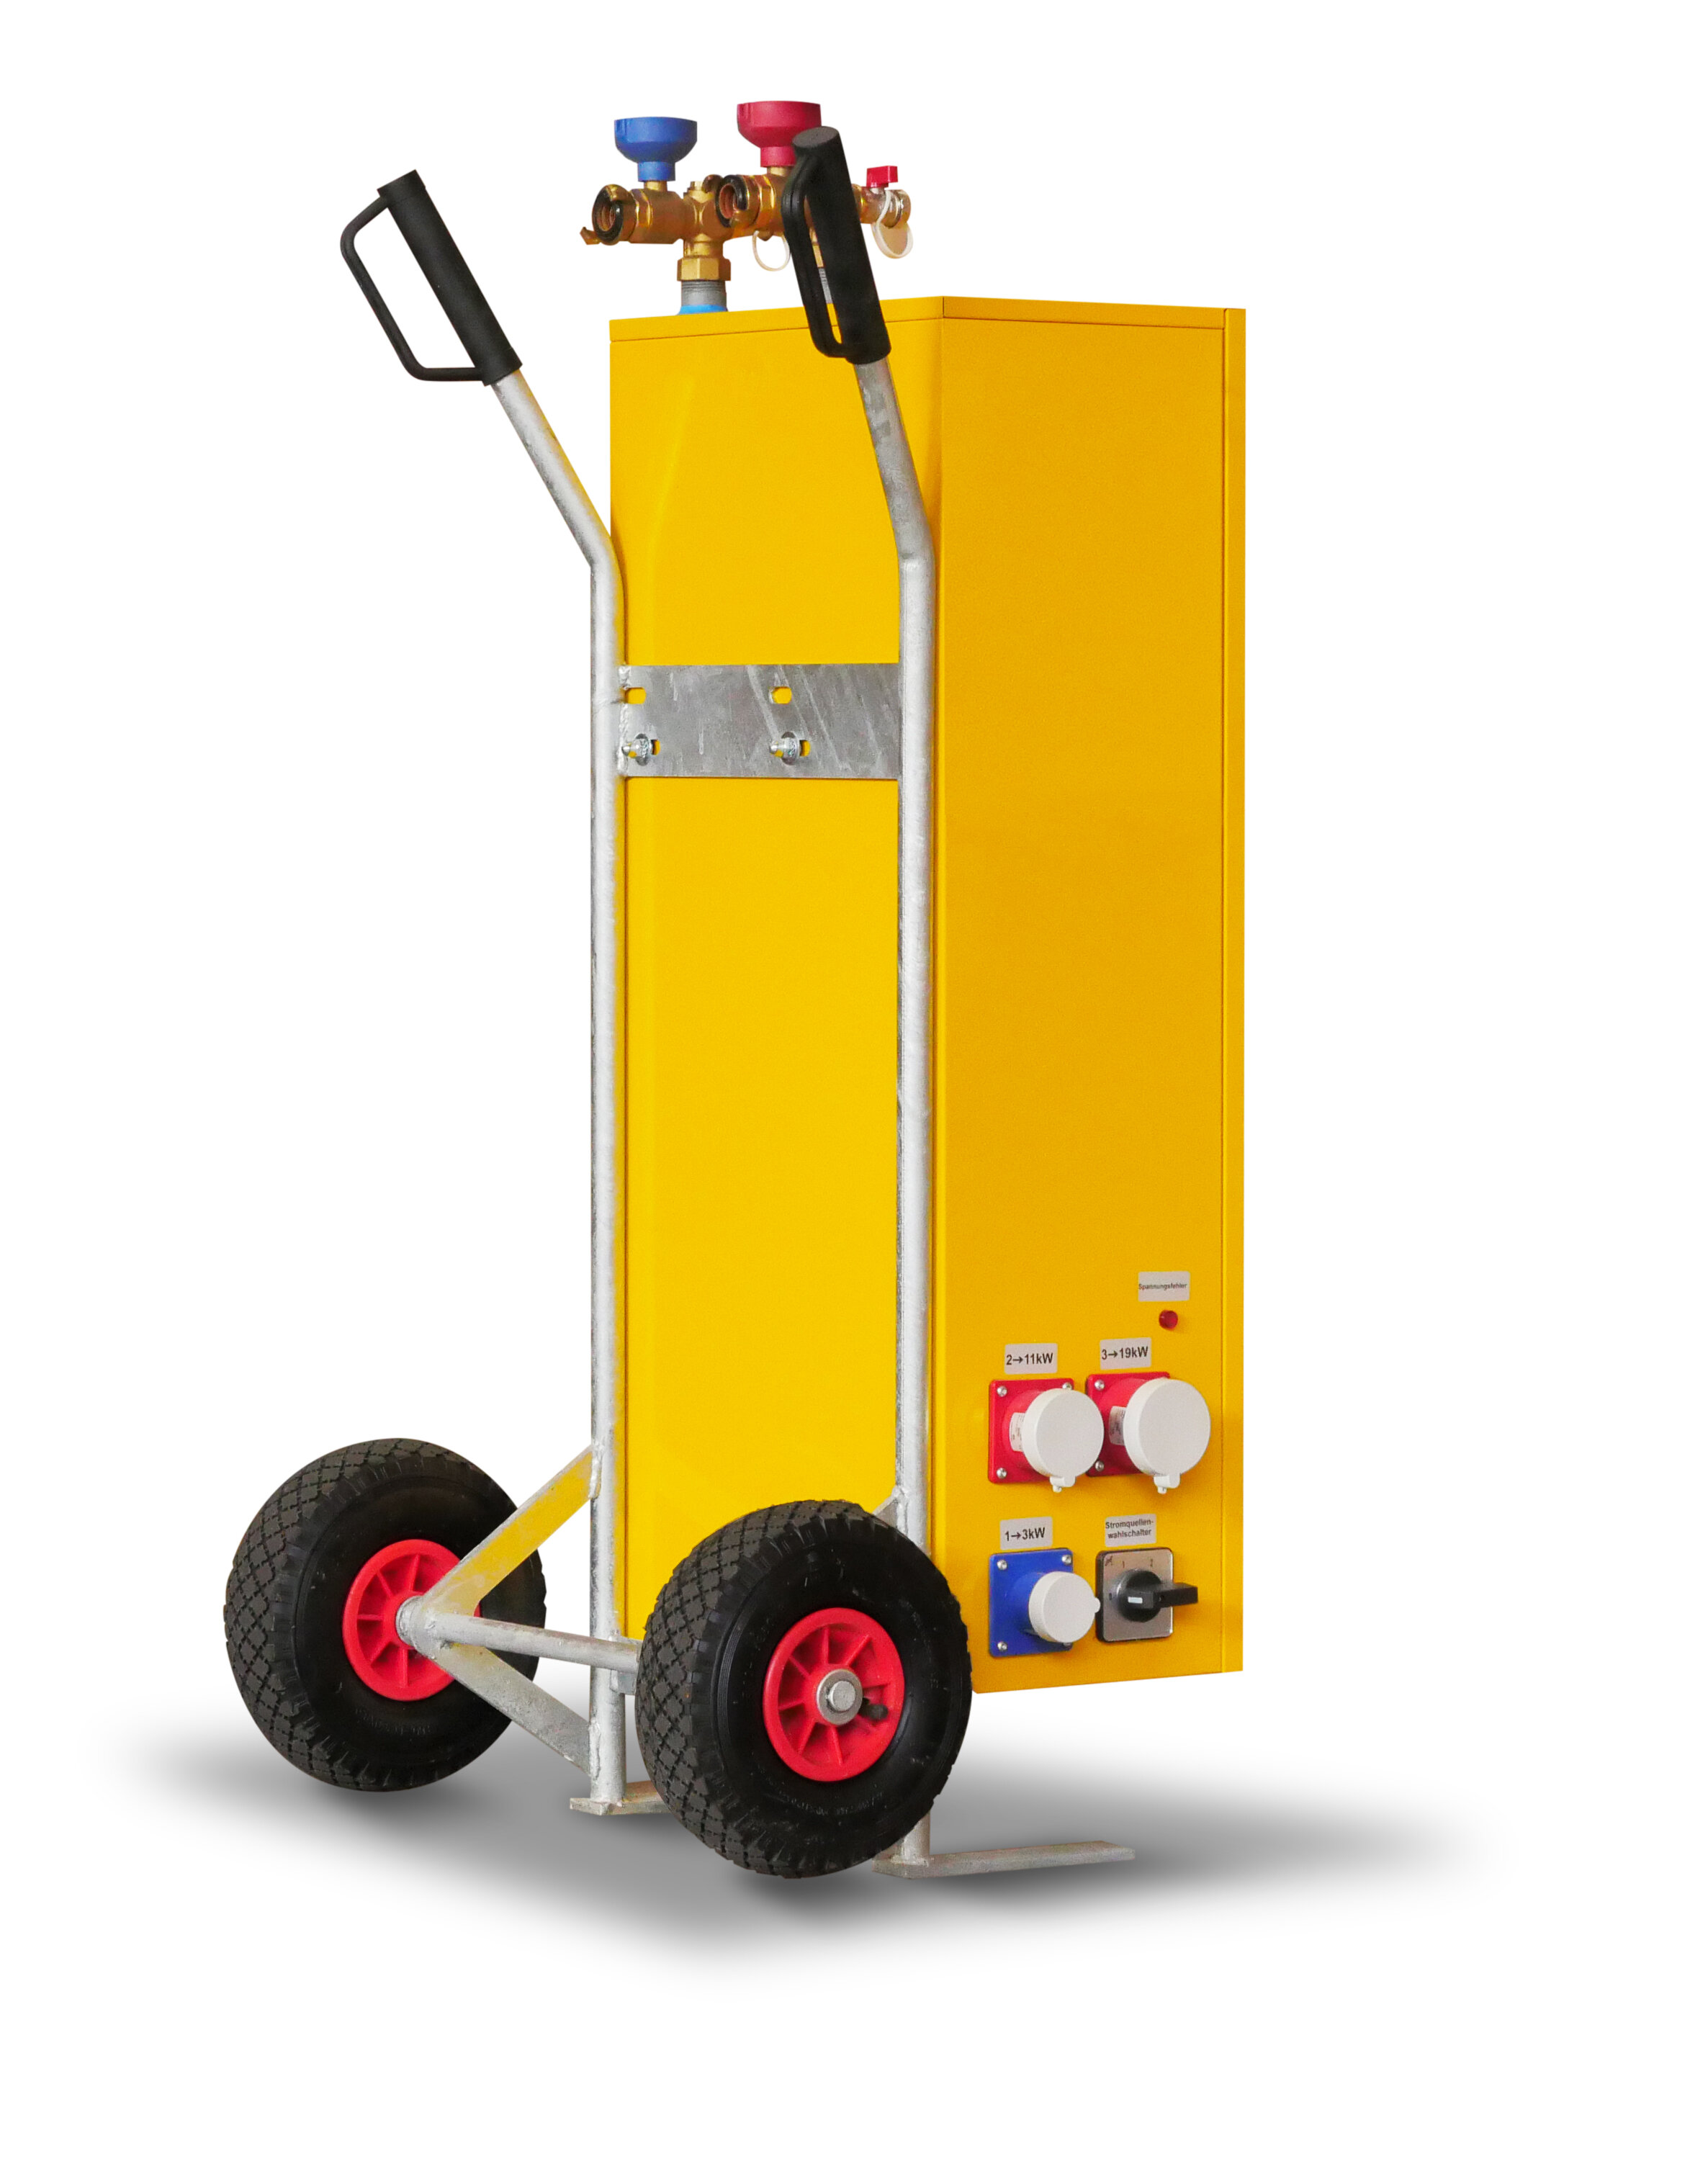 Gelbes Elektroheizmobil von mobiheat, Rückseite mit Anschlüssen sichtbar | © mobiheat GmbH